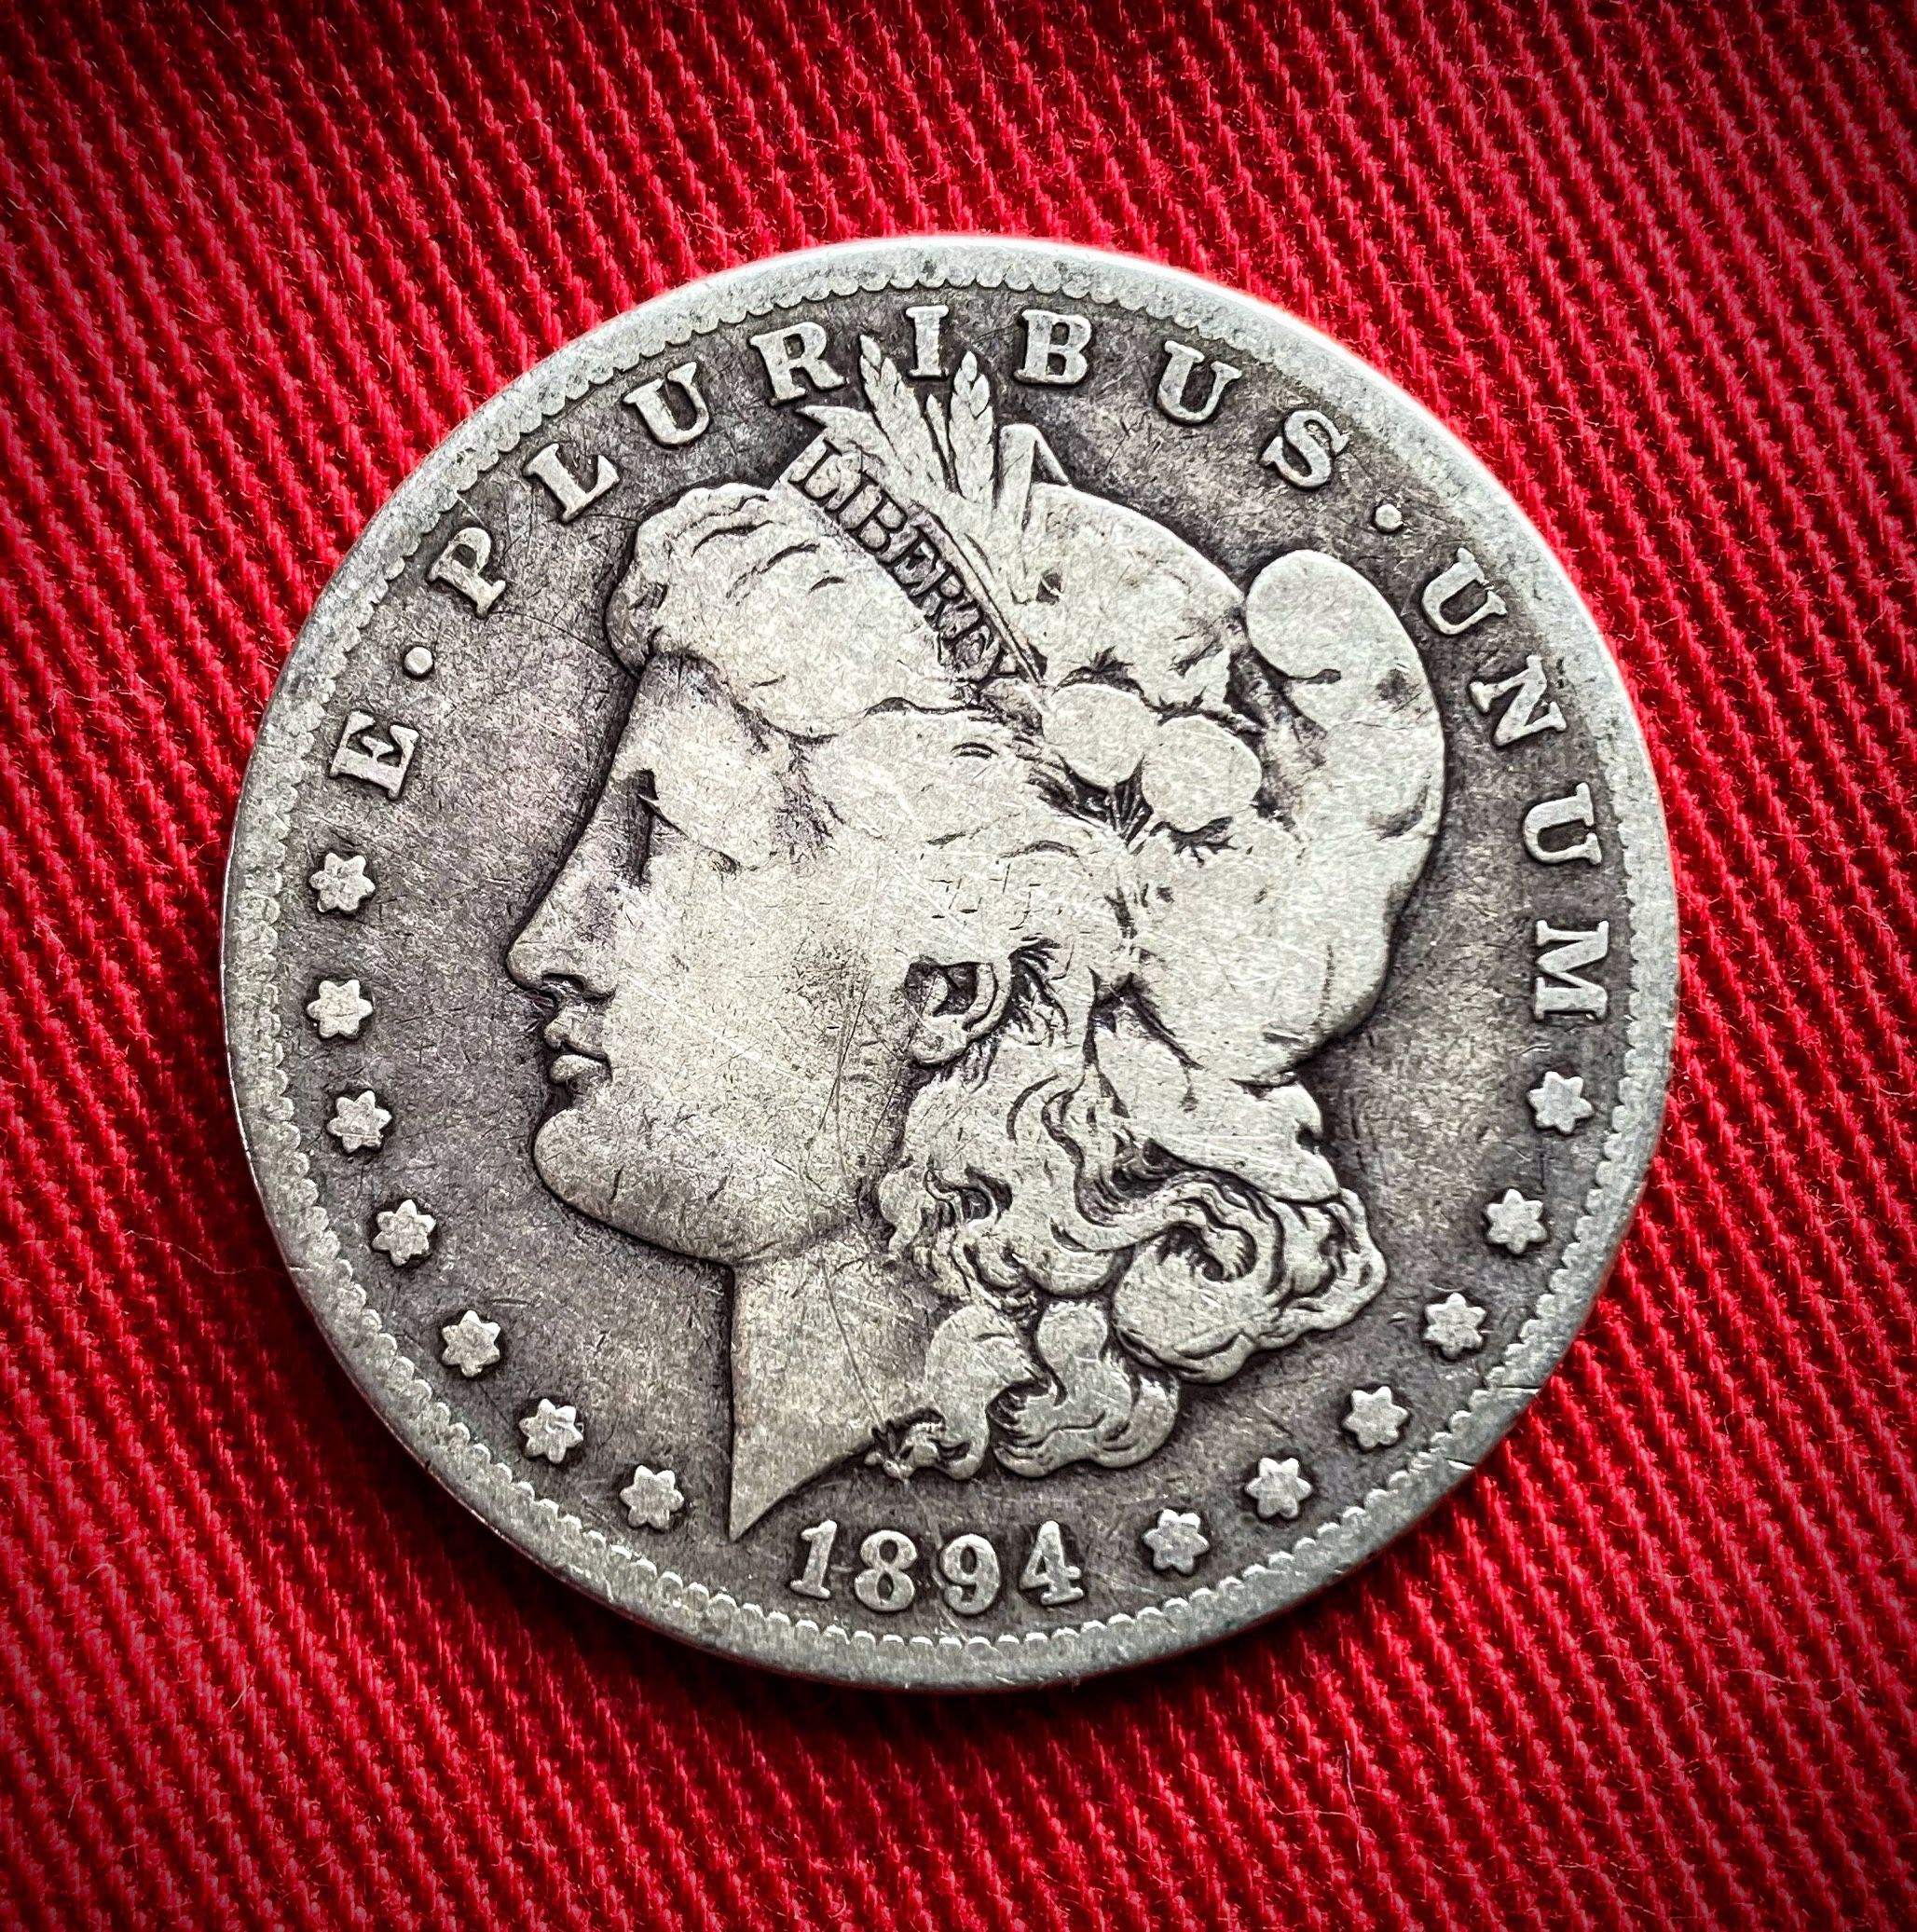  1894 S Morgan Silver Dollar Semi-Key Date